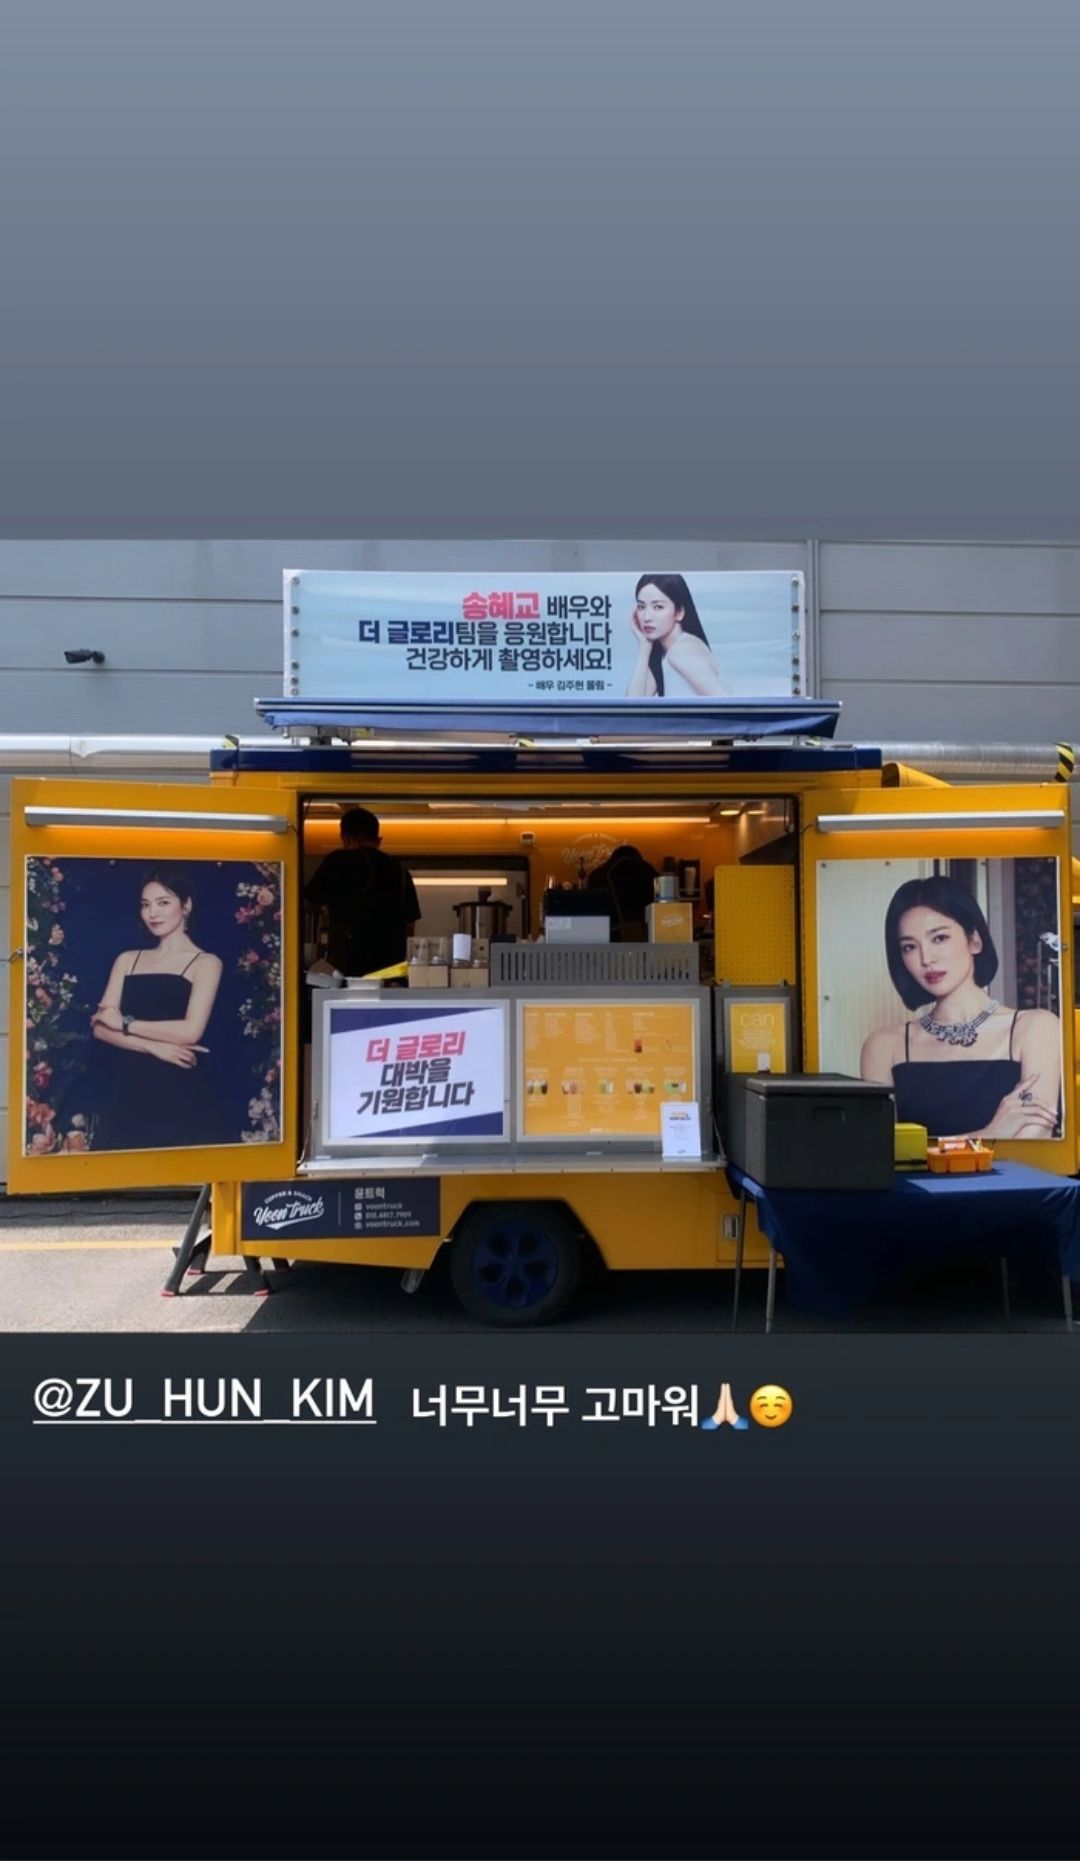 Kiriman truk kopi dari Kim Joo Heon untuk Song Hye Kyo yang memicu rumor kencan./Instagram Story/@kyo1122